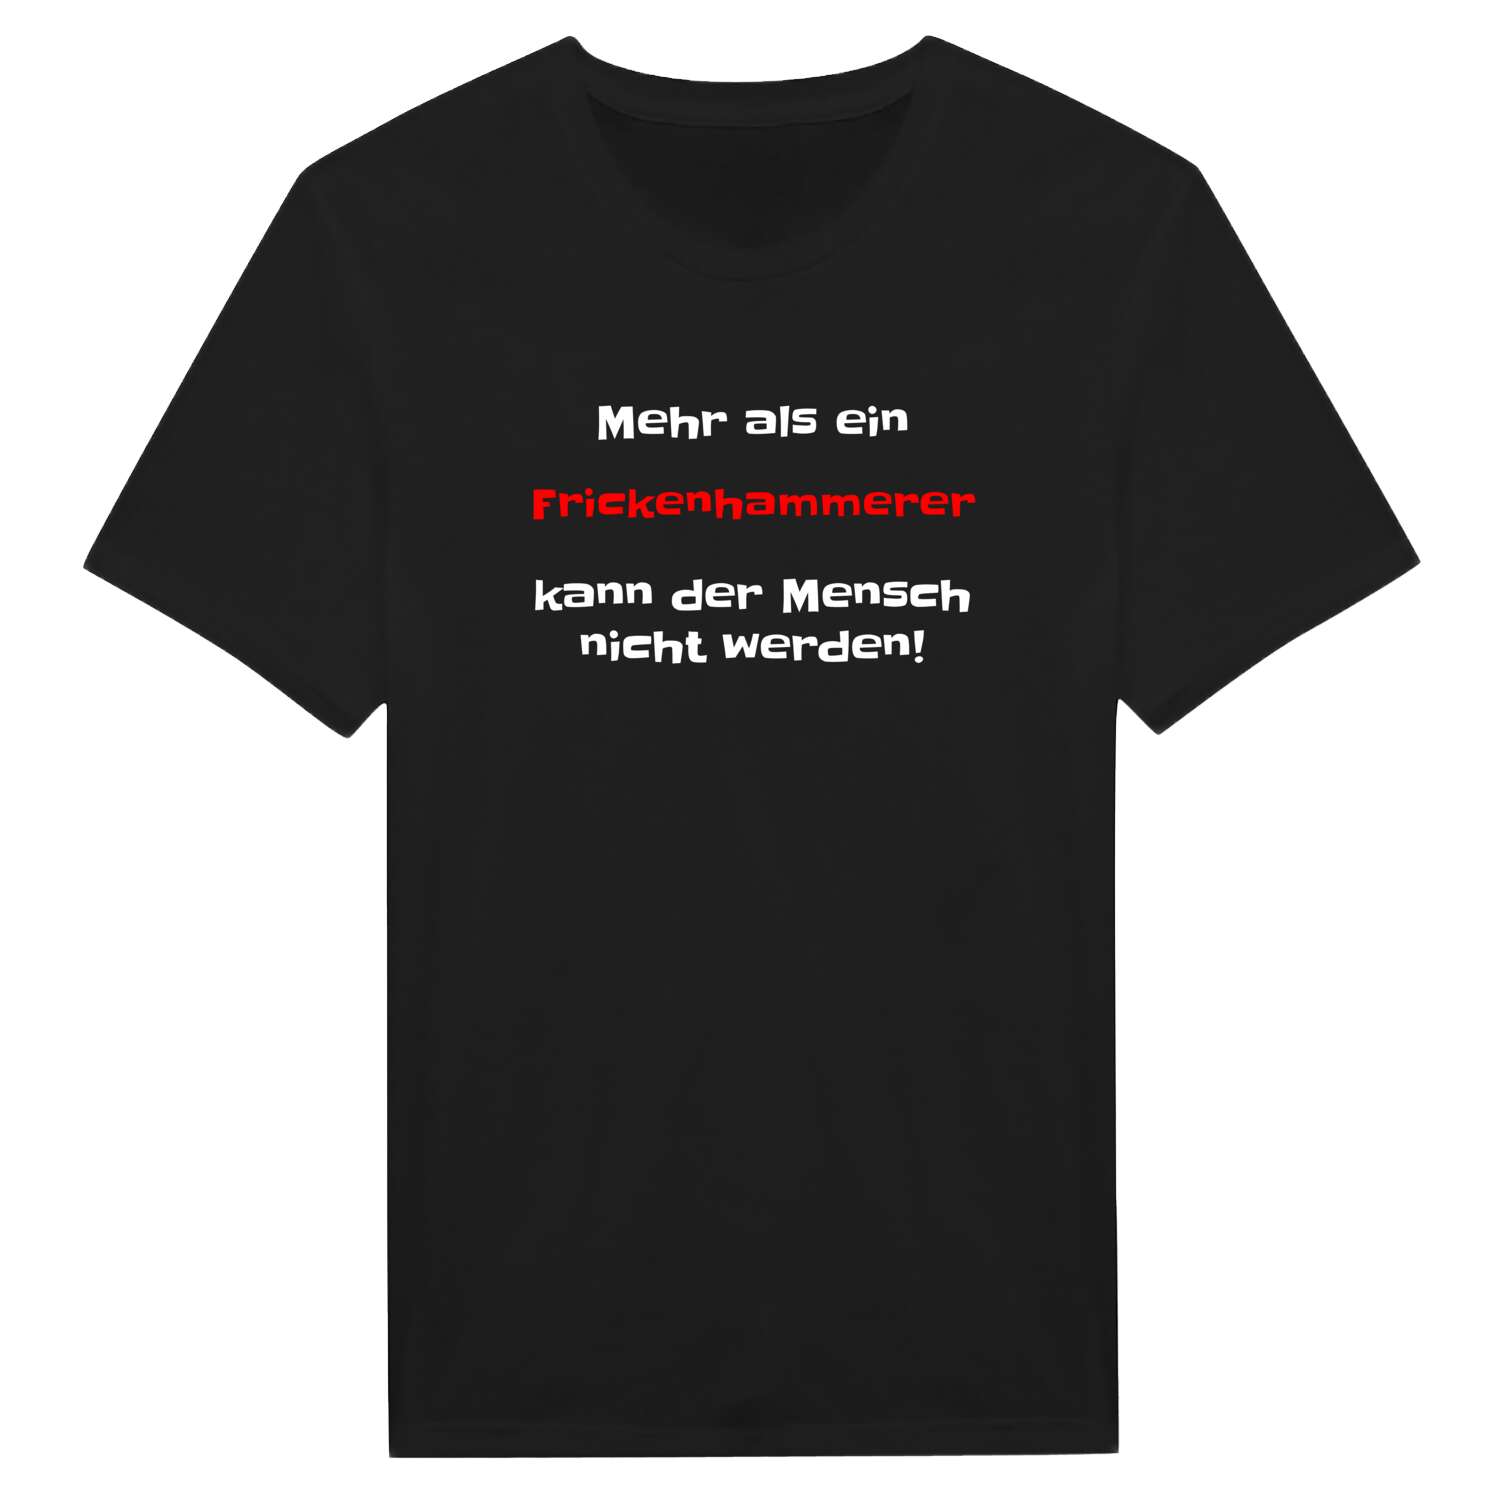 Frickenhammer T-Shirt »Mehr als ein«